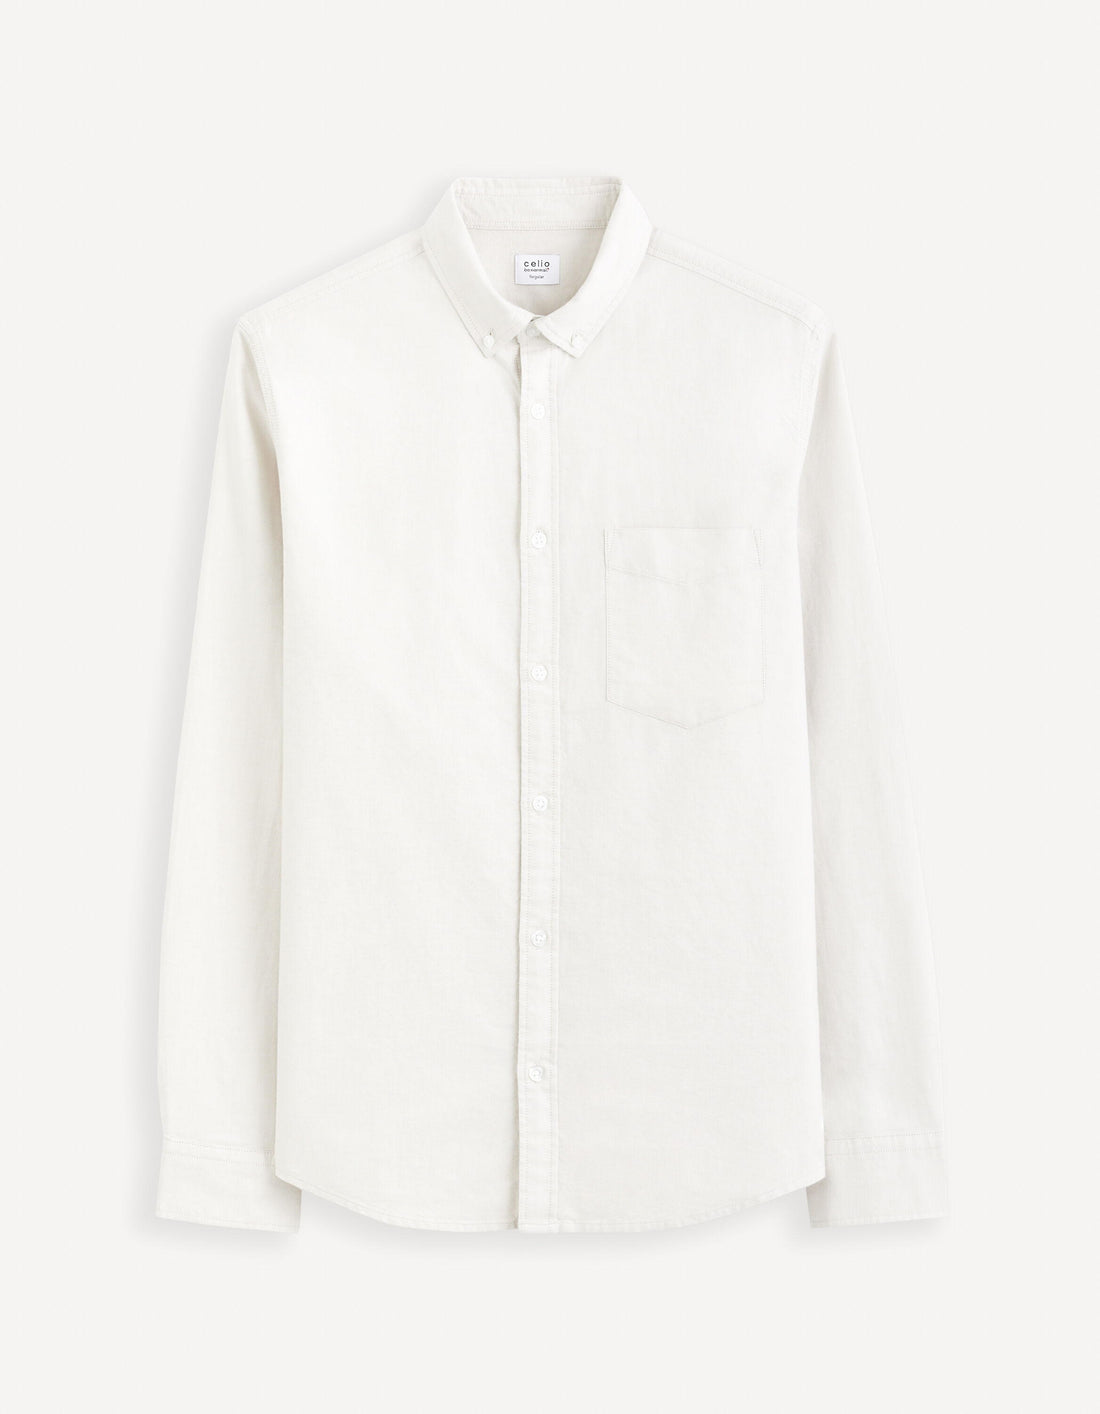 Regular Shirt 100% Cotton Oxford_DAXFORD_BEIGE 07_02